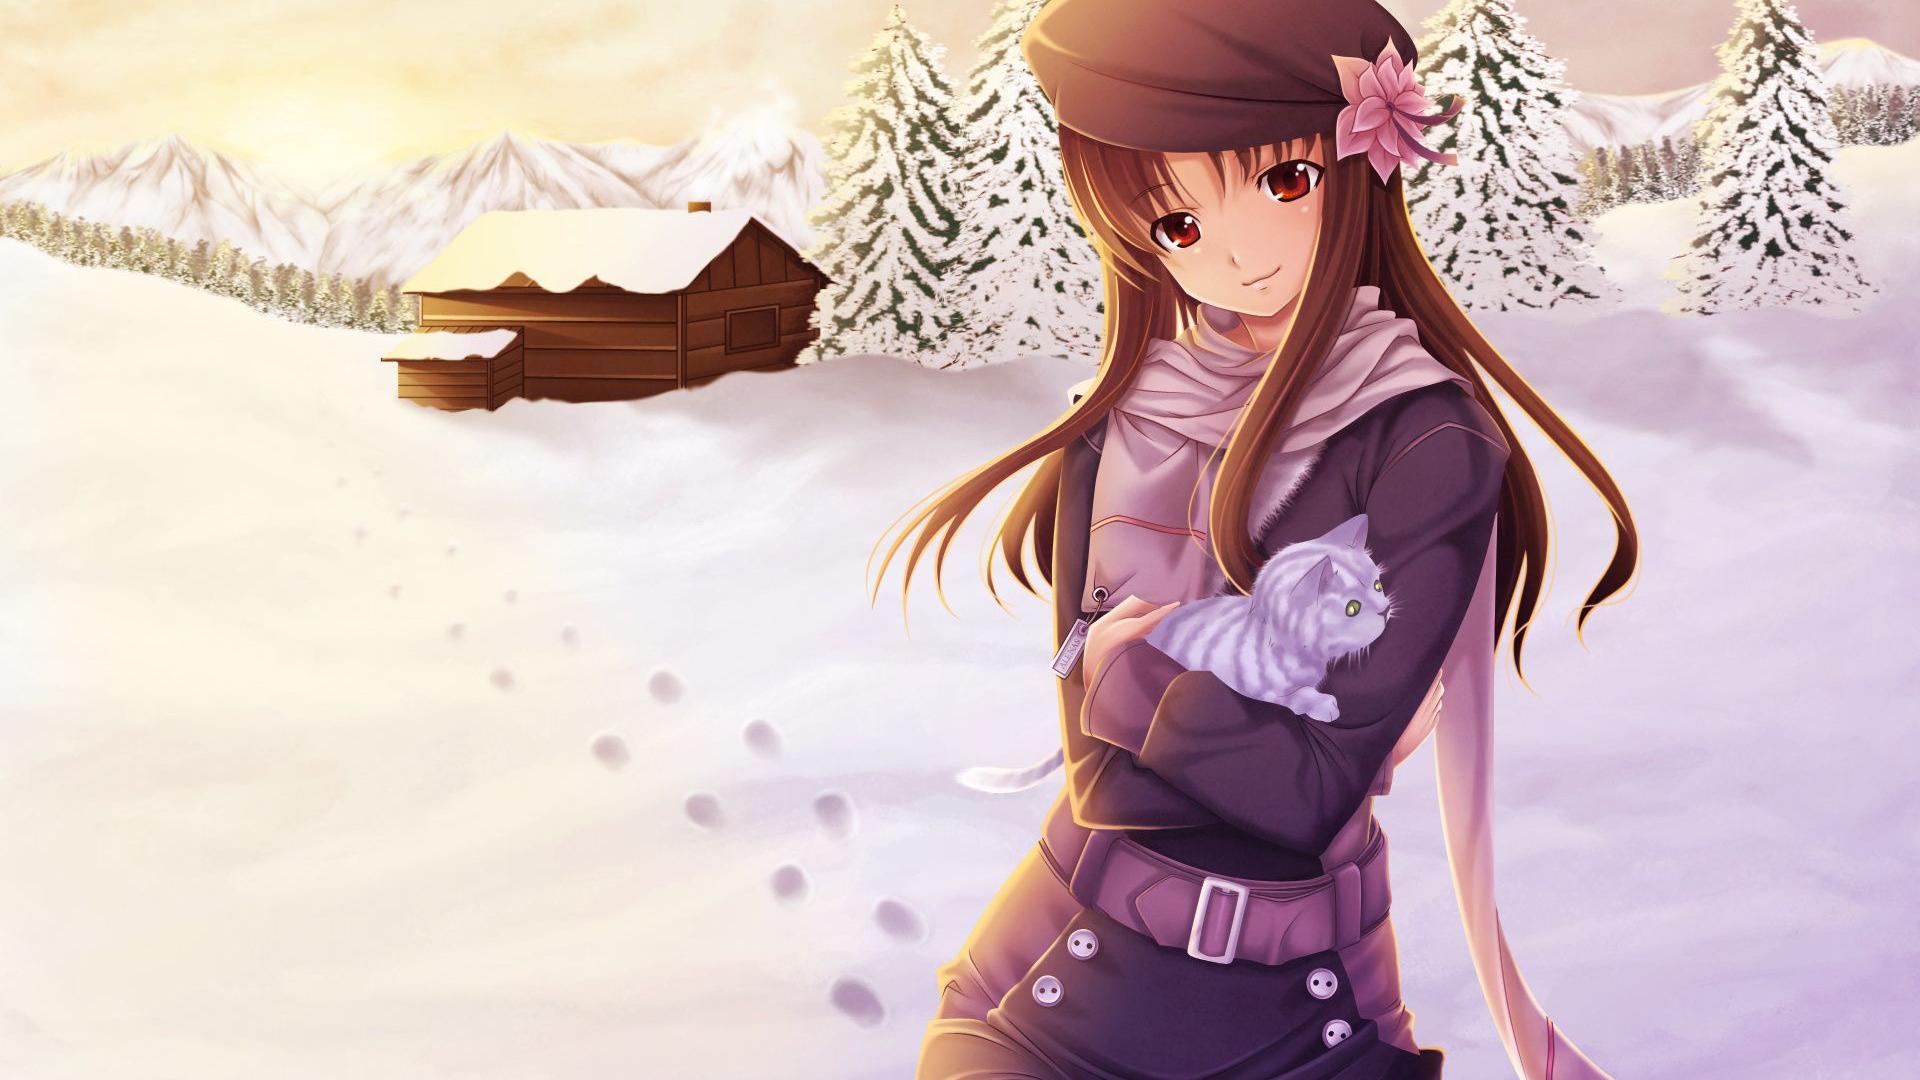 Anime Girl Winter Snow HD Wallpaper of Anime   hdwallpaper2013com